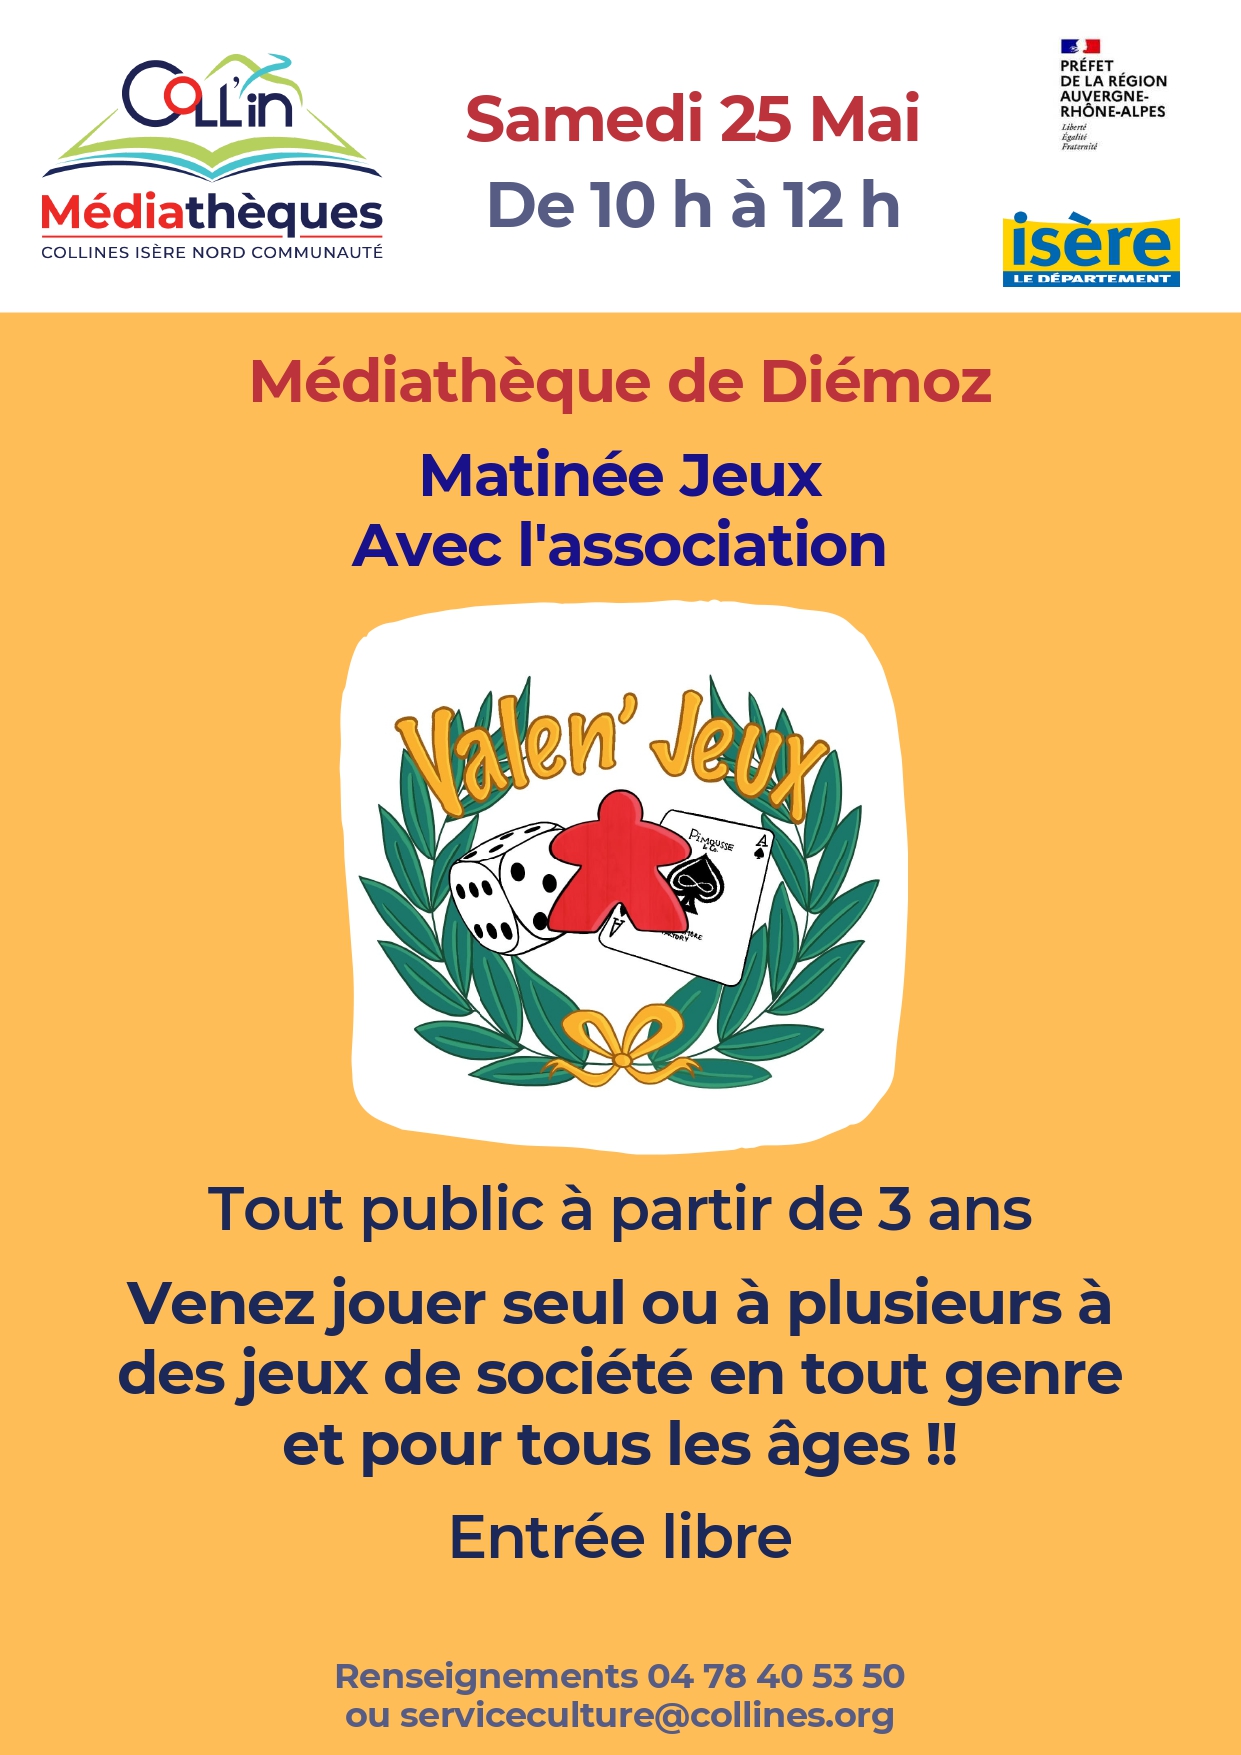 Image de Matinée Jeux de Société